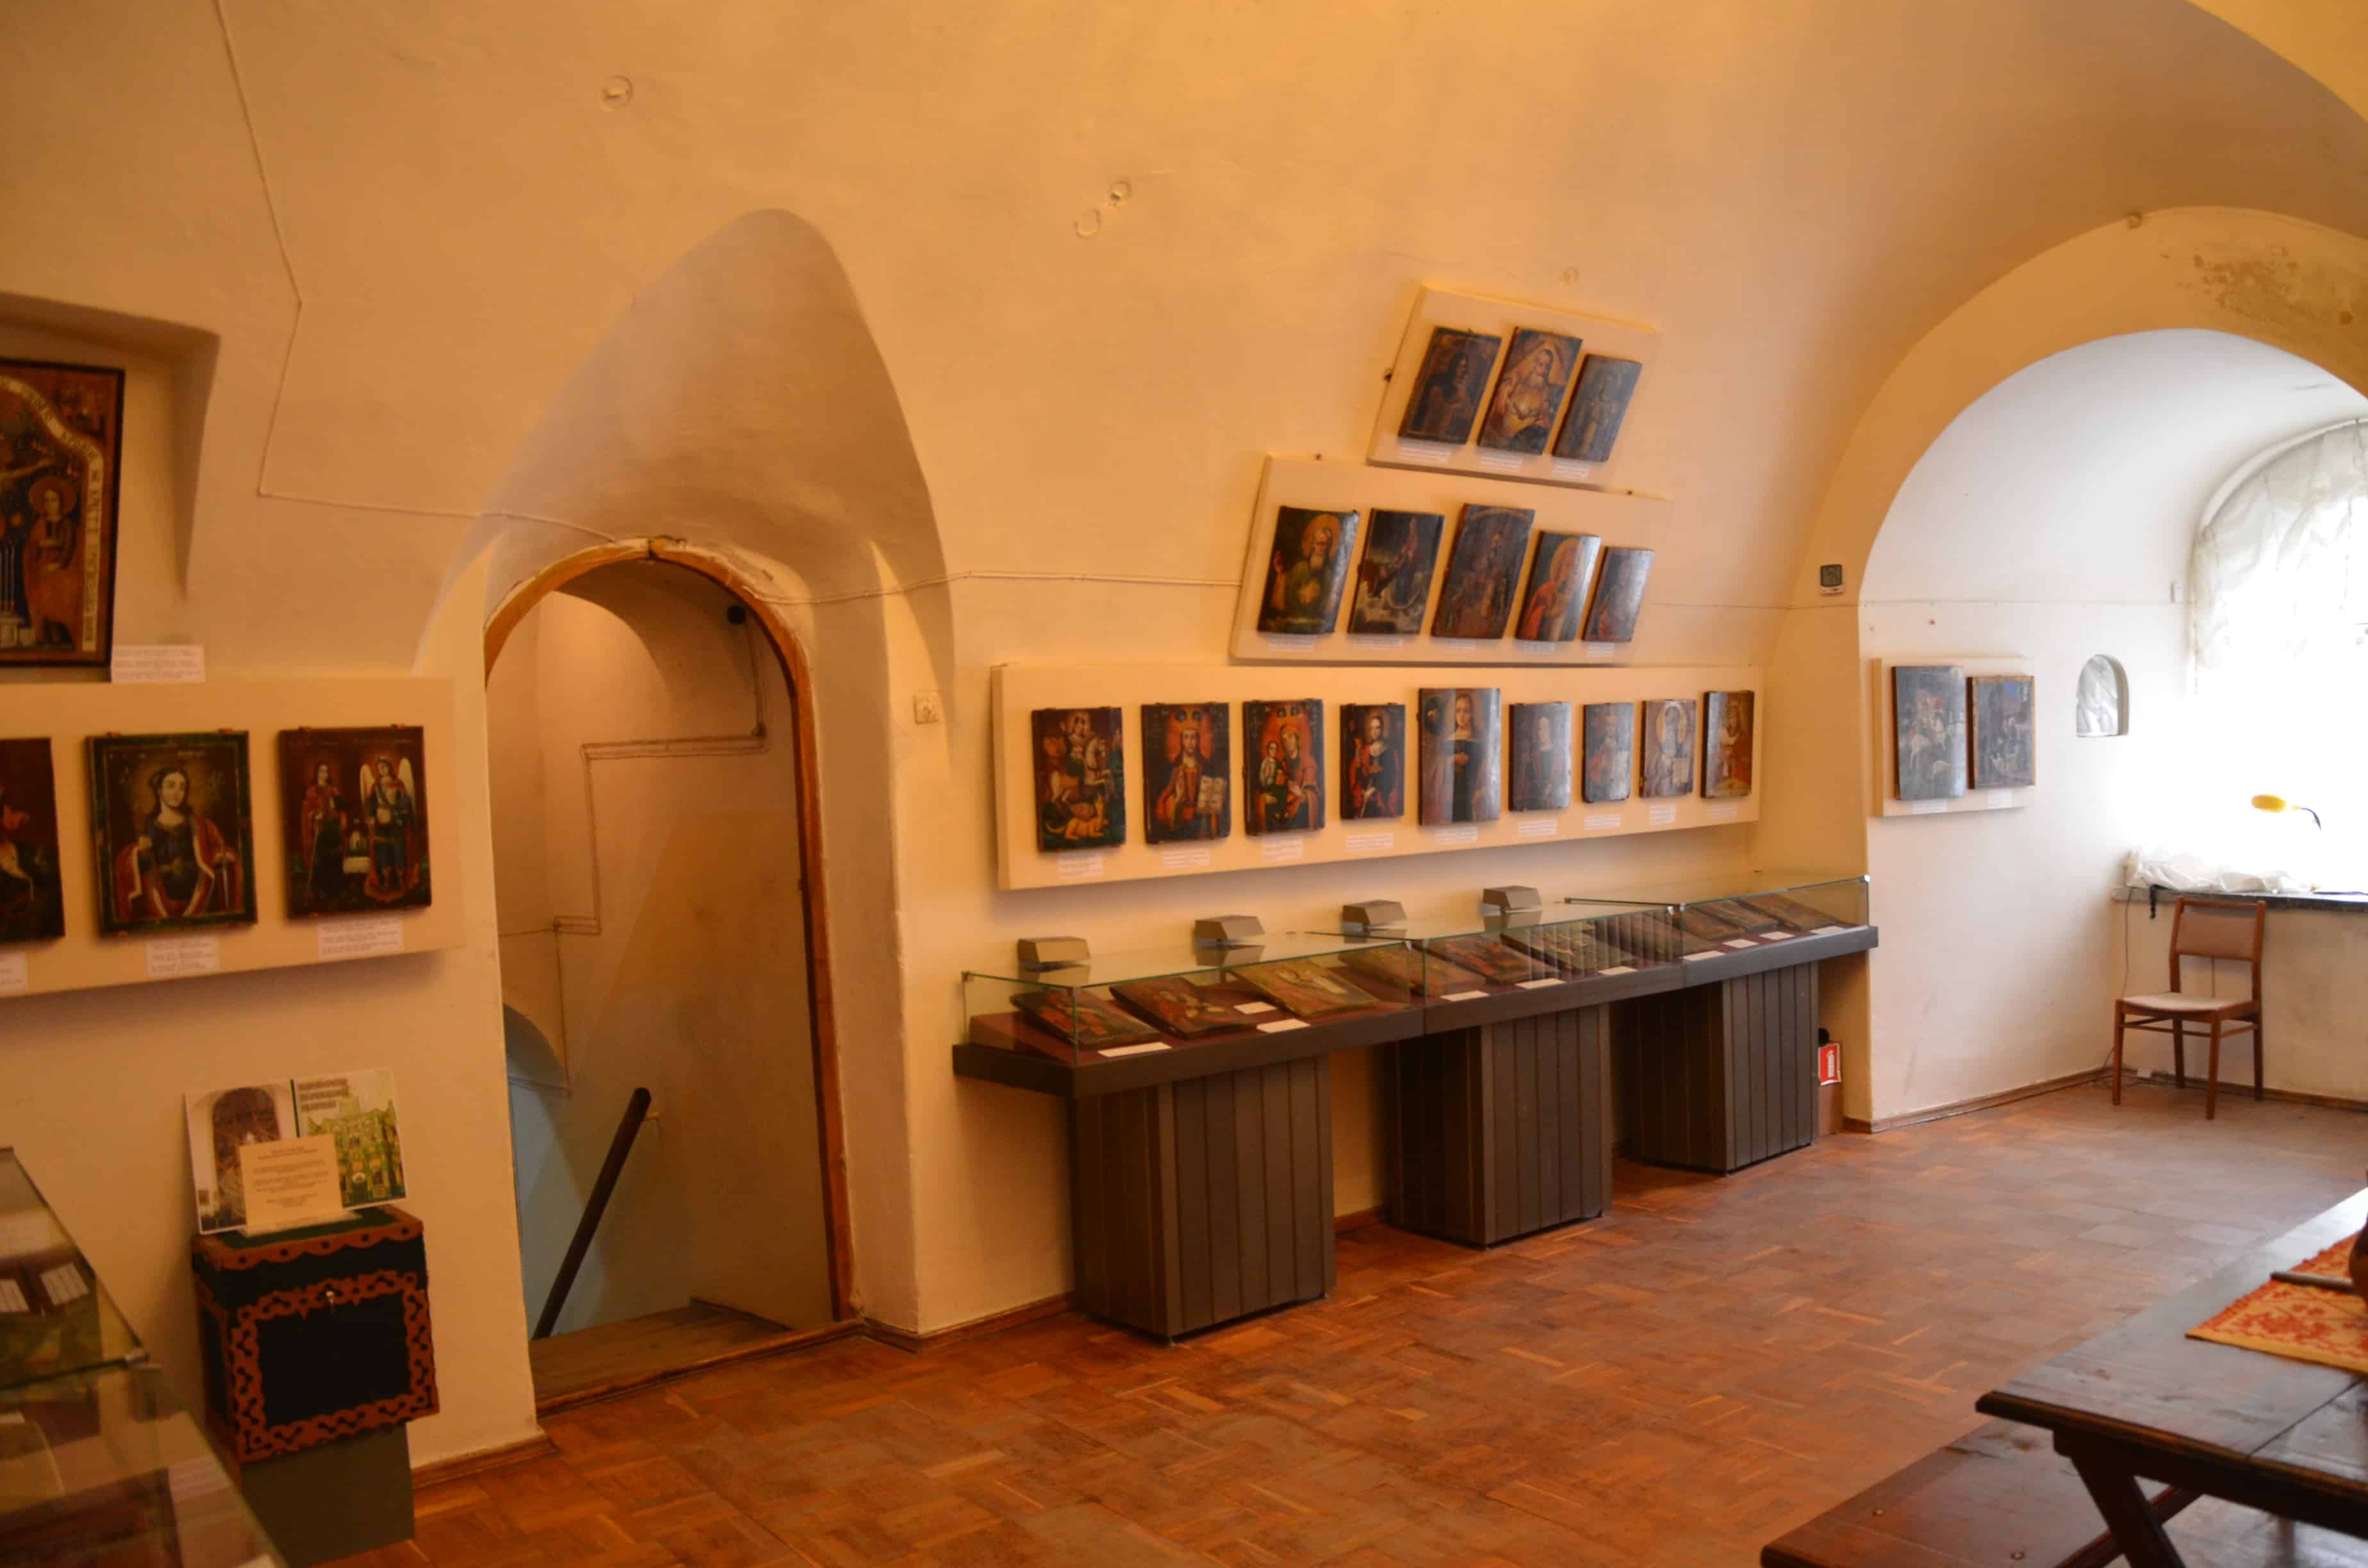 Exhibits inside the Collegium